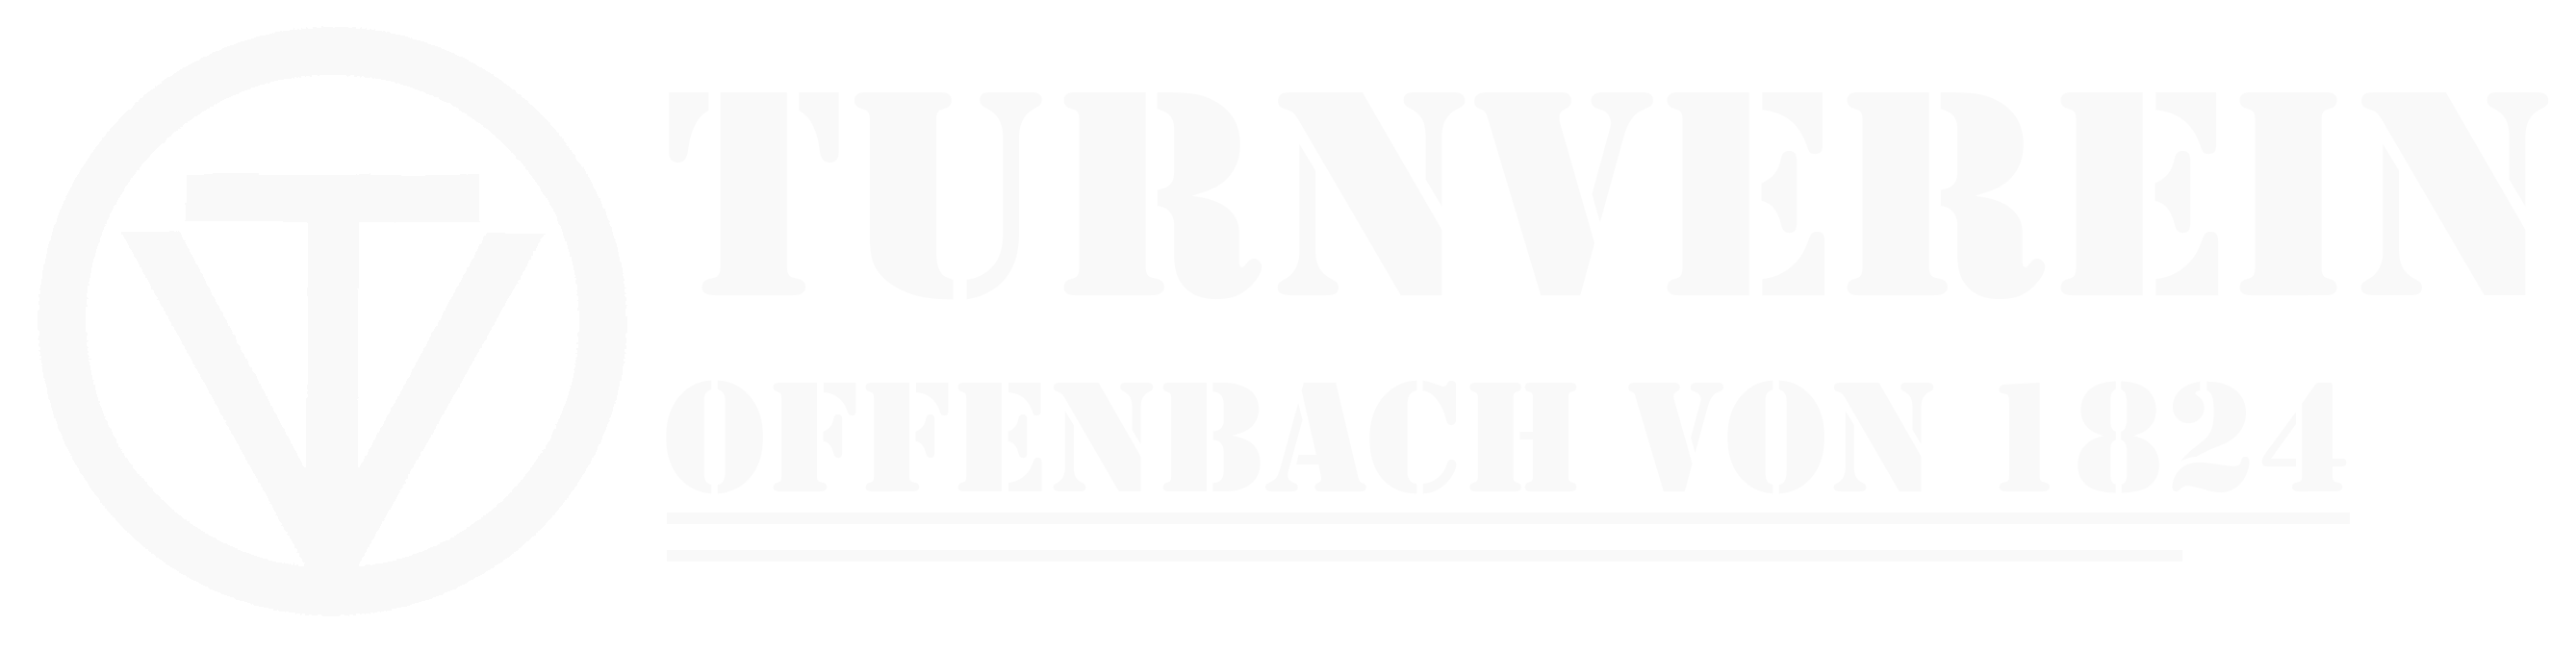 Turnverein Offenbach am Main von 1824